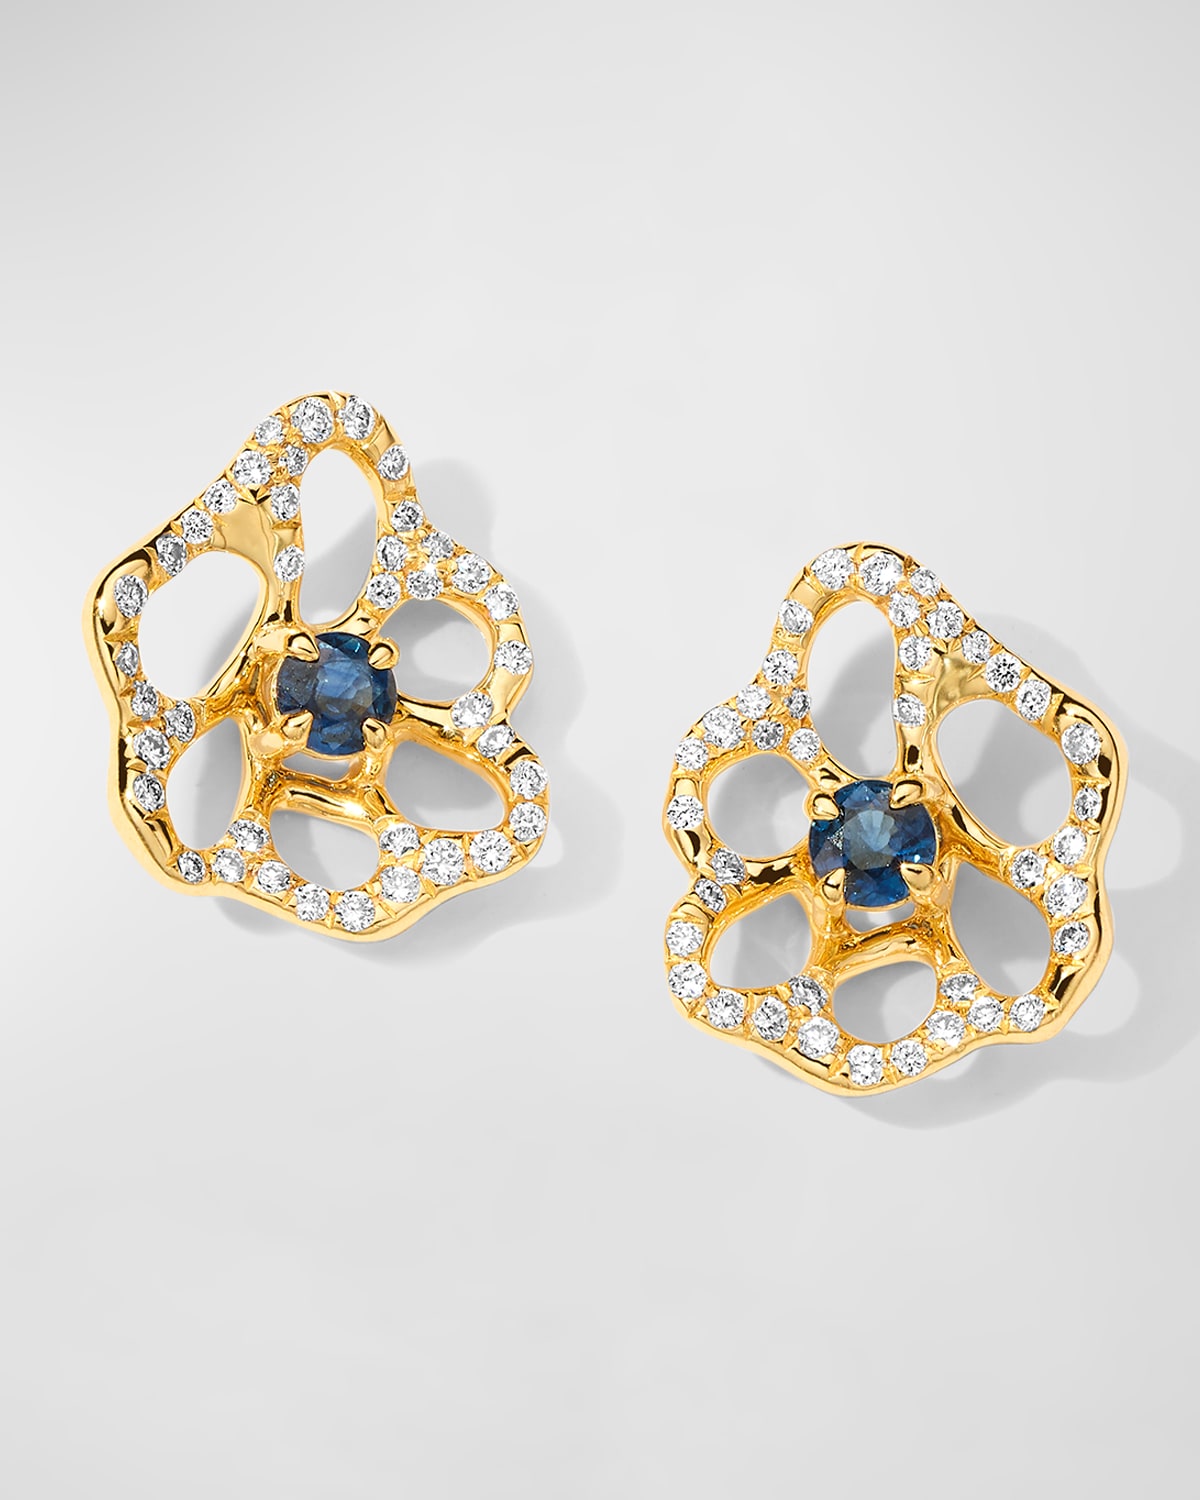 Ippolita Women's Stardust 18k Yellow Gold, Blue Sapphire & 0.3 Tcw Diamond Flower Stud Earrings